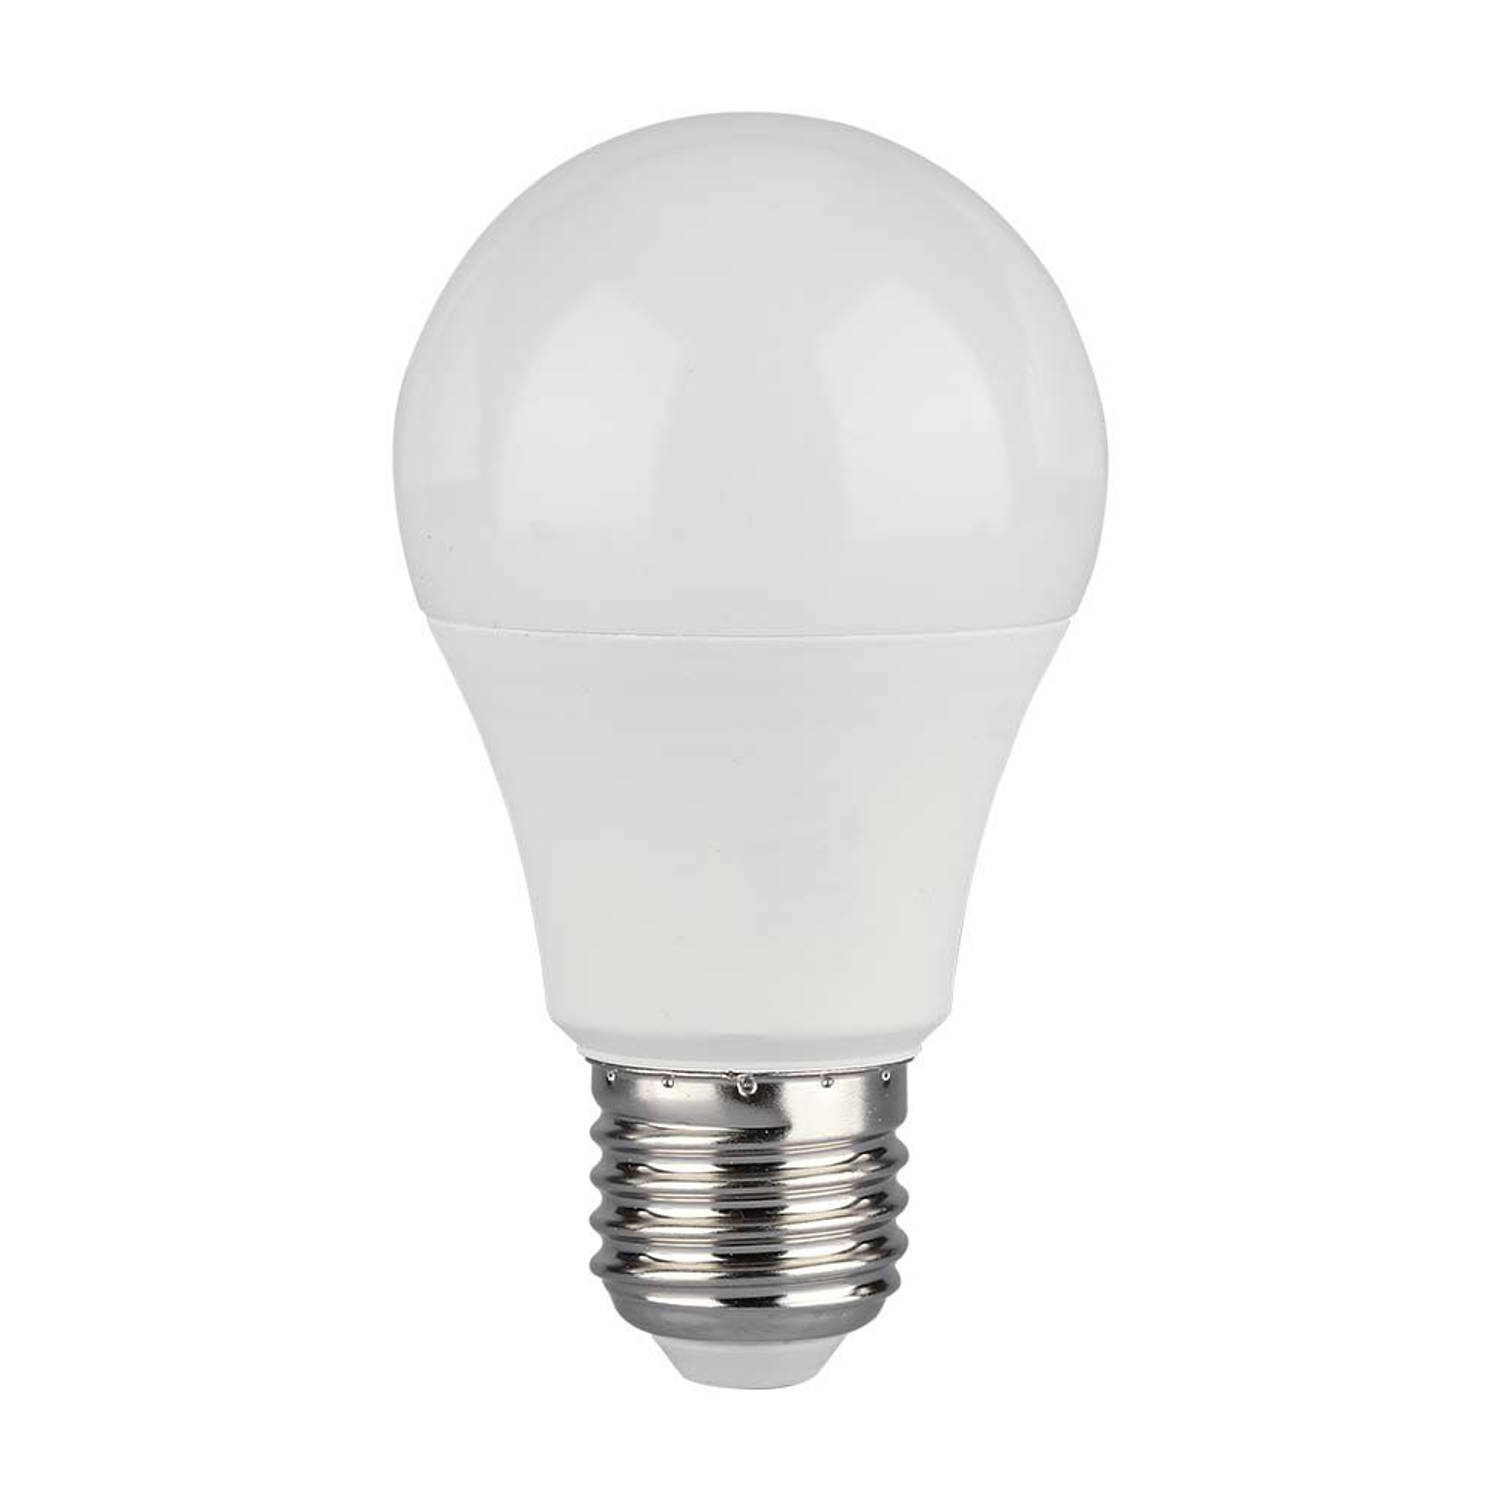 V-TAC VT-2112-N E27 Witte LED Lamp GLS IP20 10.5W 1055 Lumen 4000K